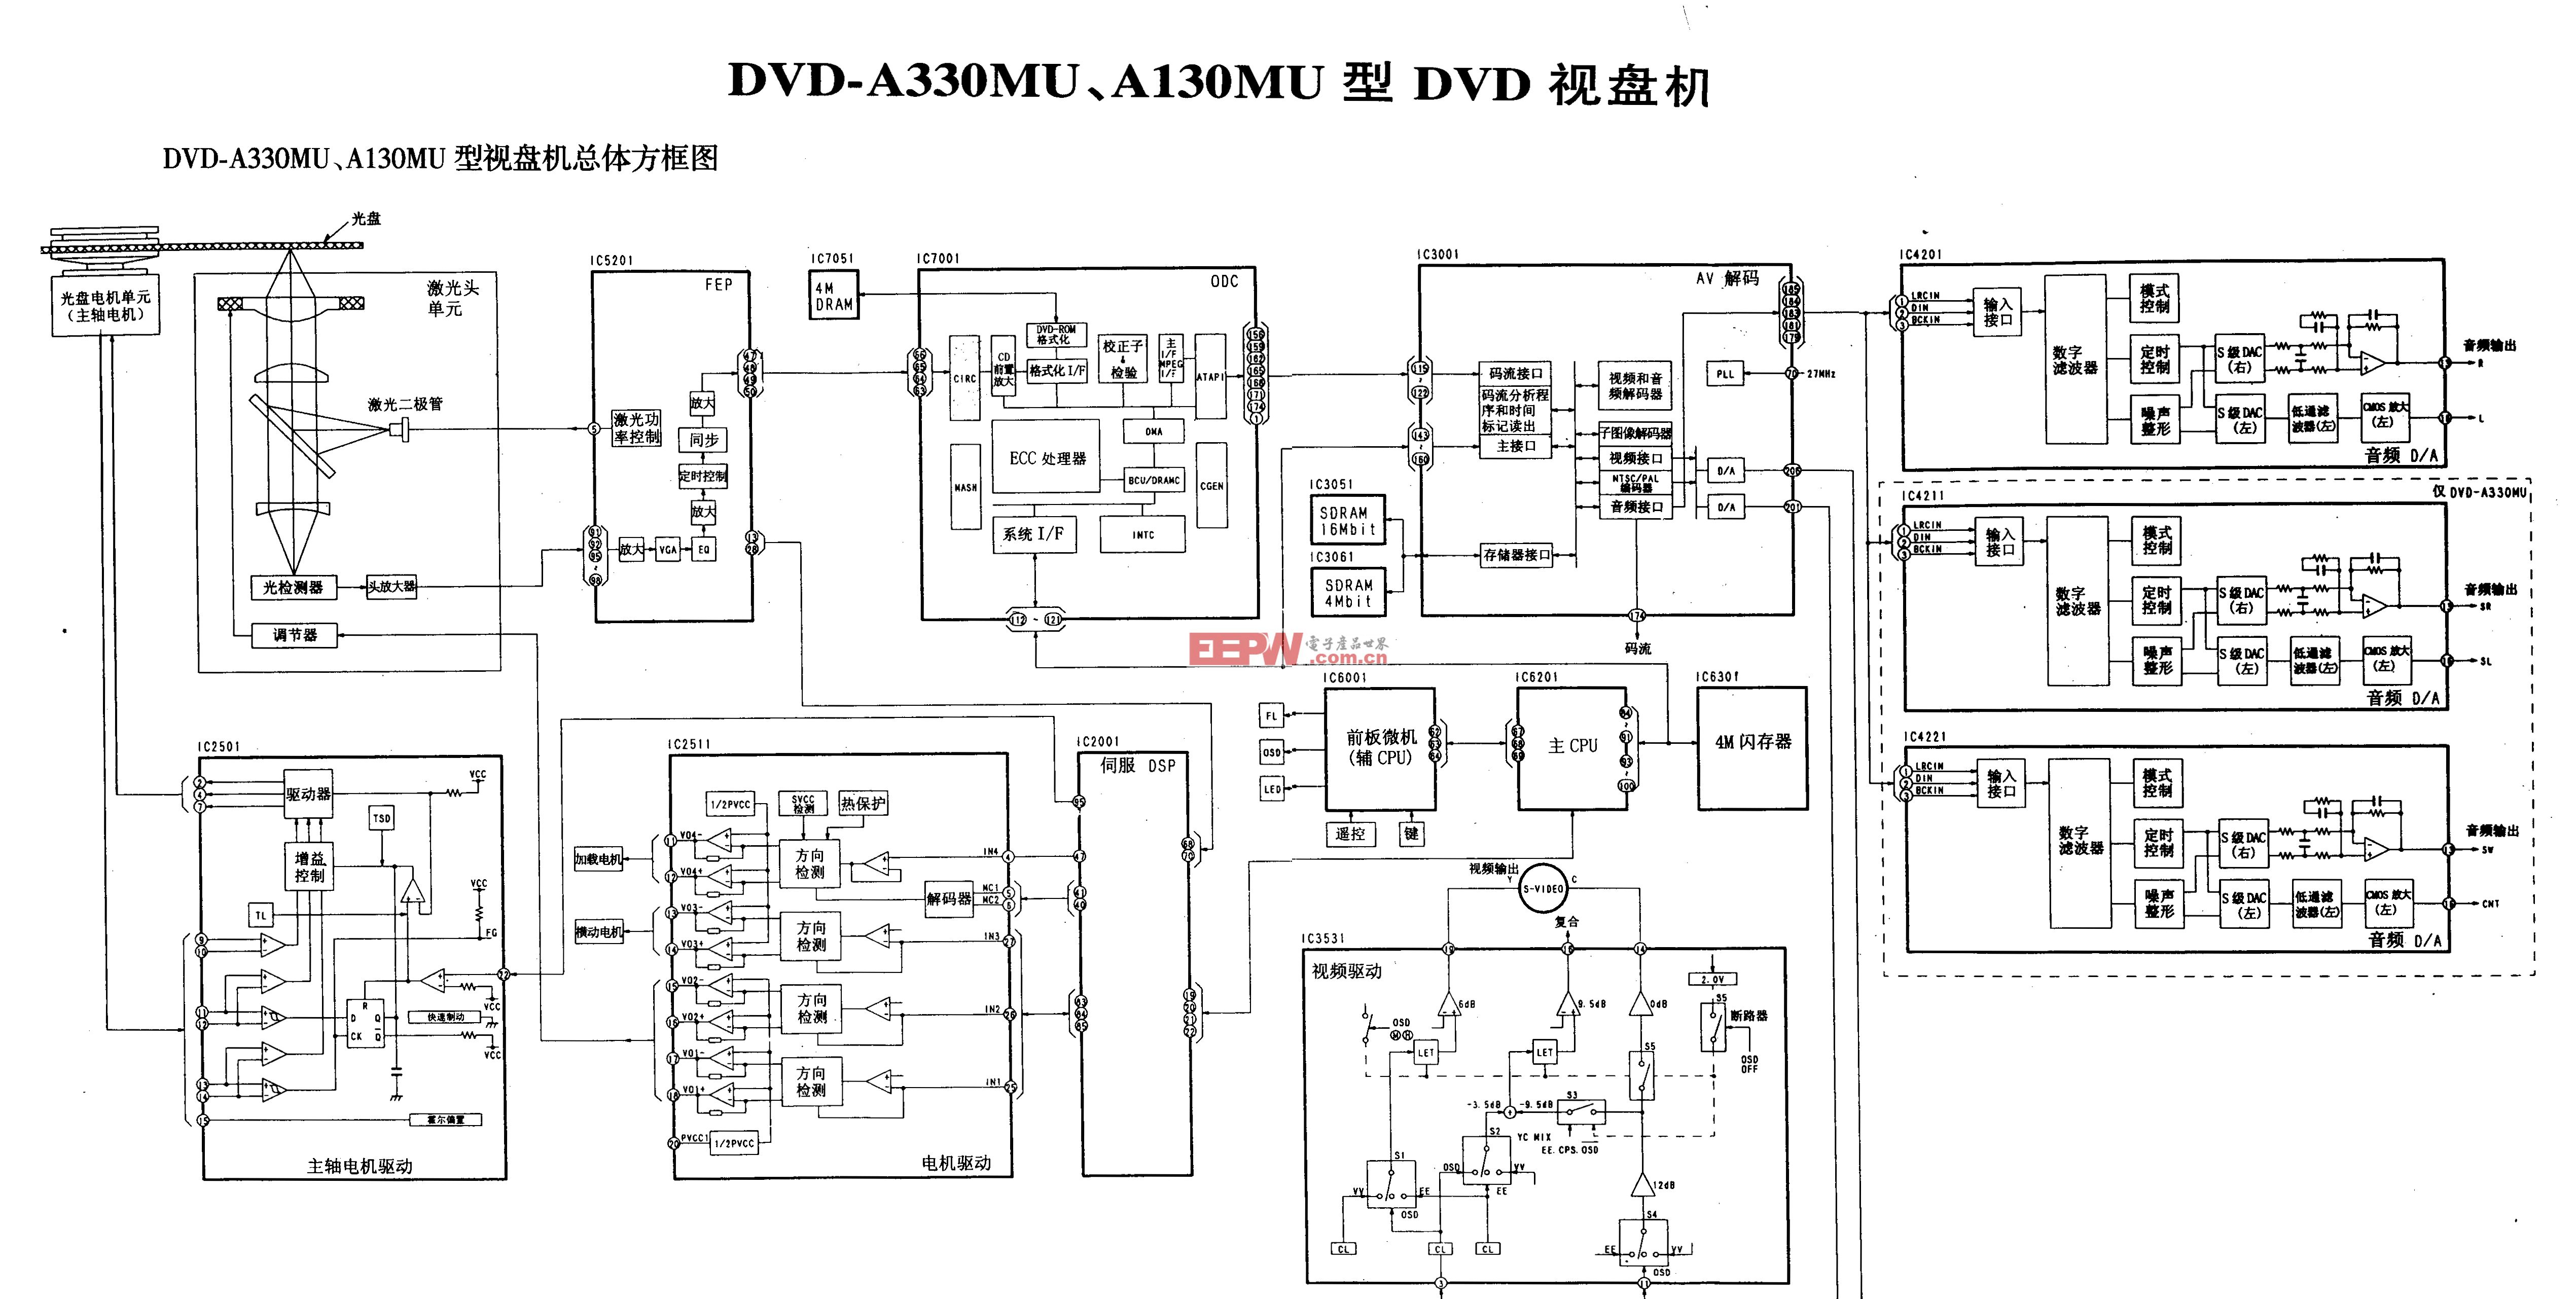 松下DVD-A330MU、DVD-A130MU型DVD-总体方框图